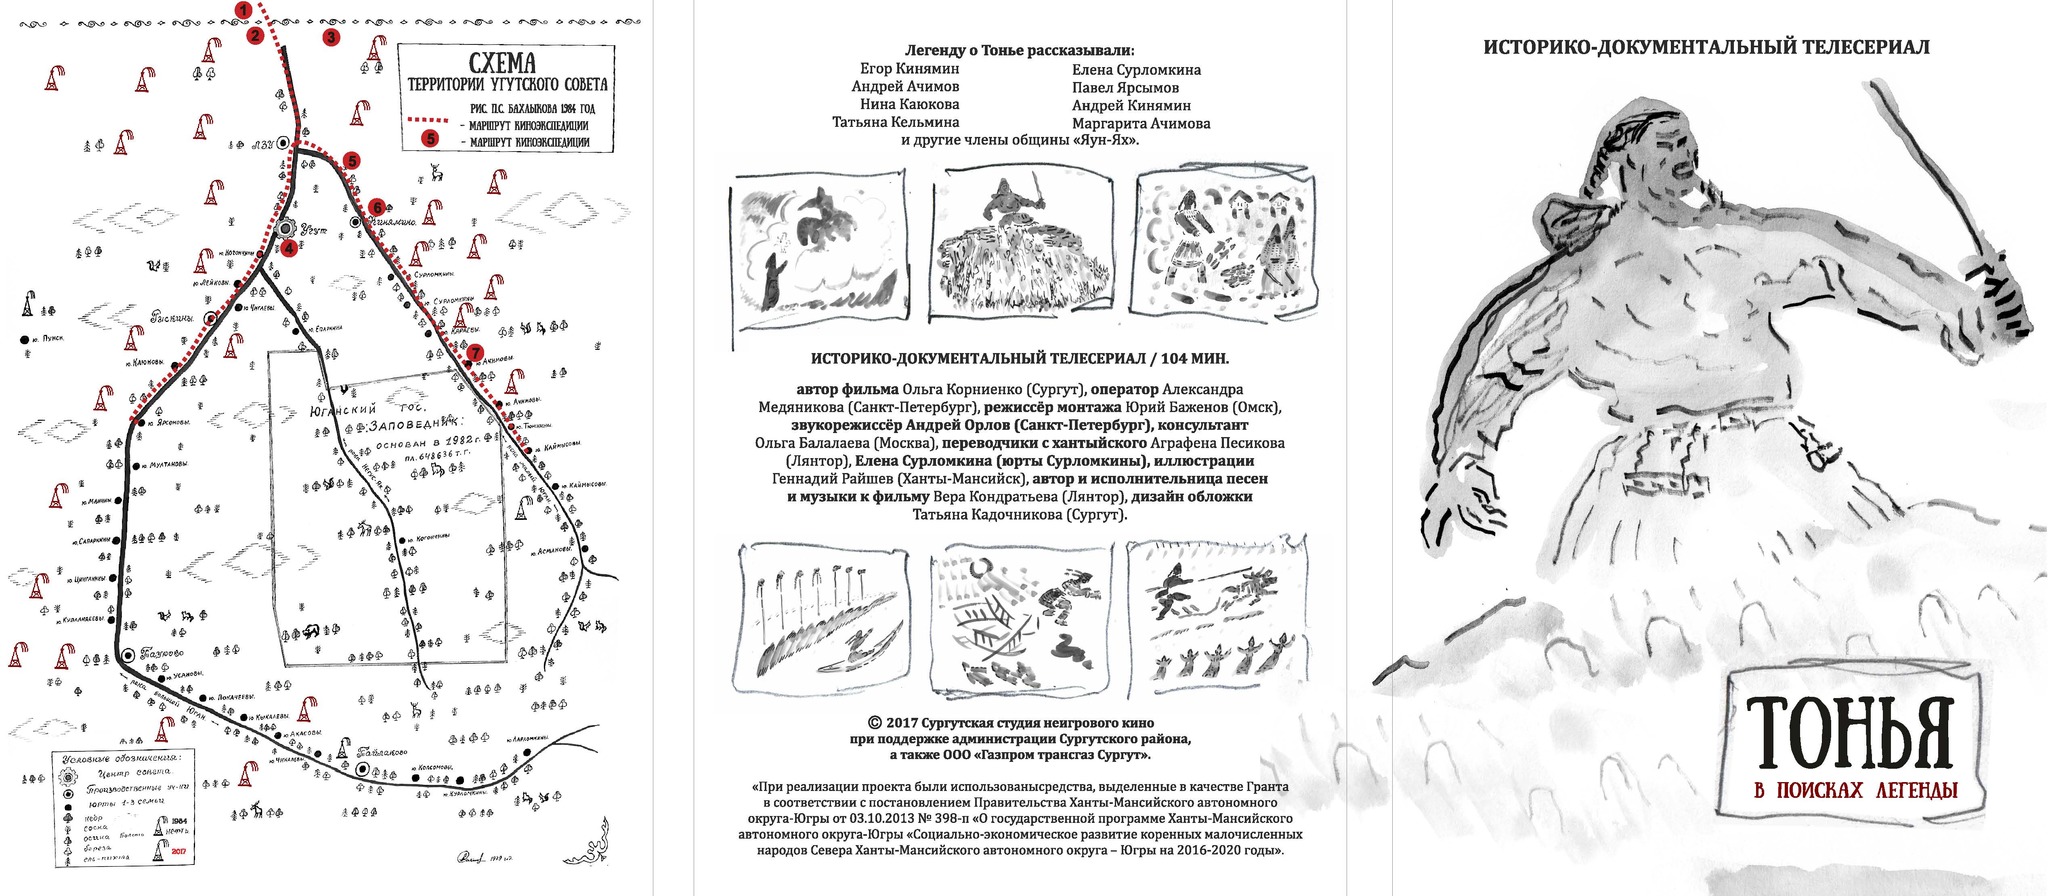 Графические работы по хантыйскому эпосу представит народный художник России Геннадий Райшев